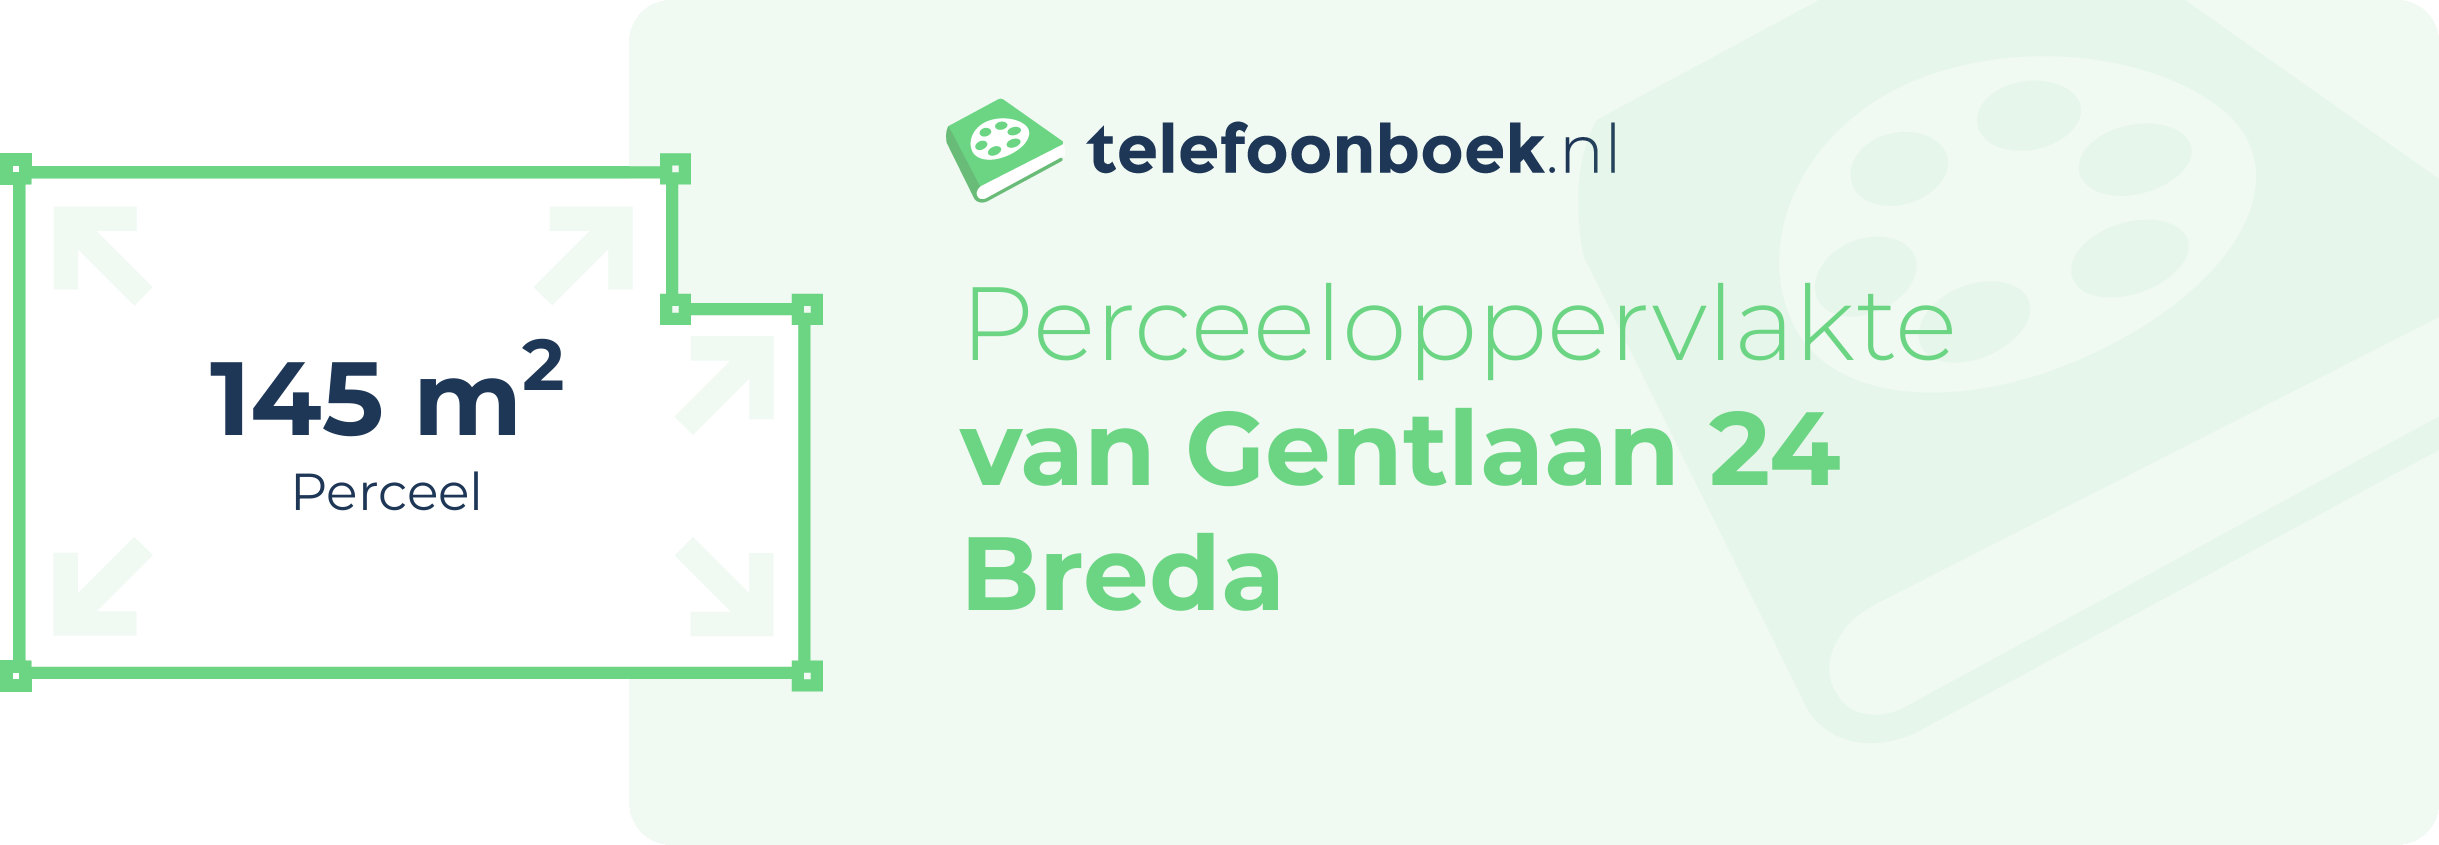 Perceeloppervlakte Van Gentlaan 24 Breda